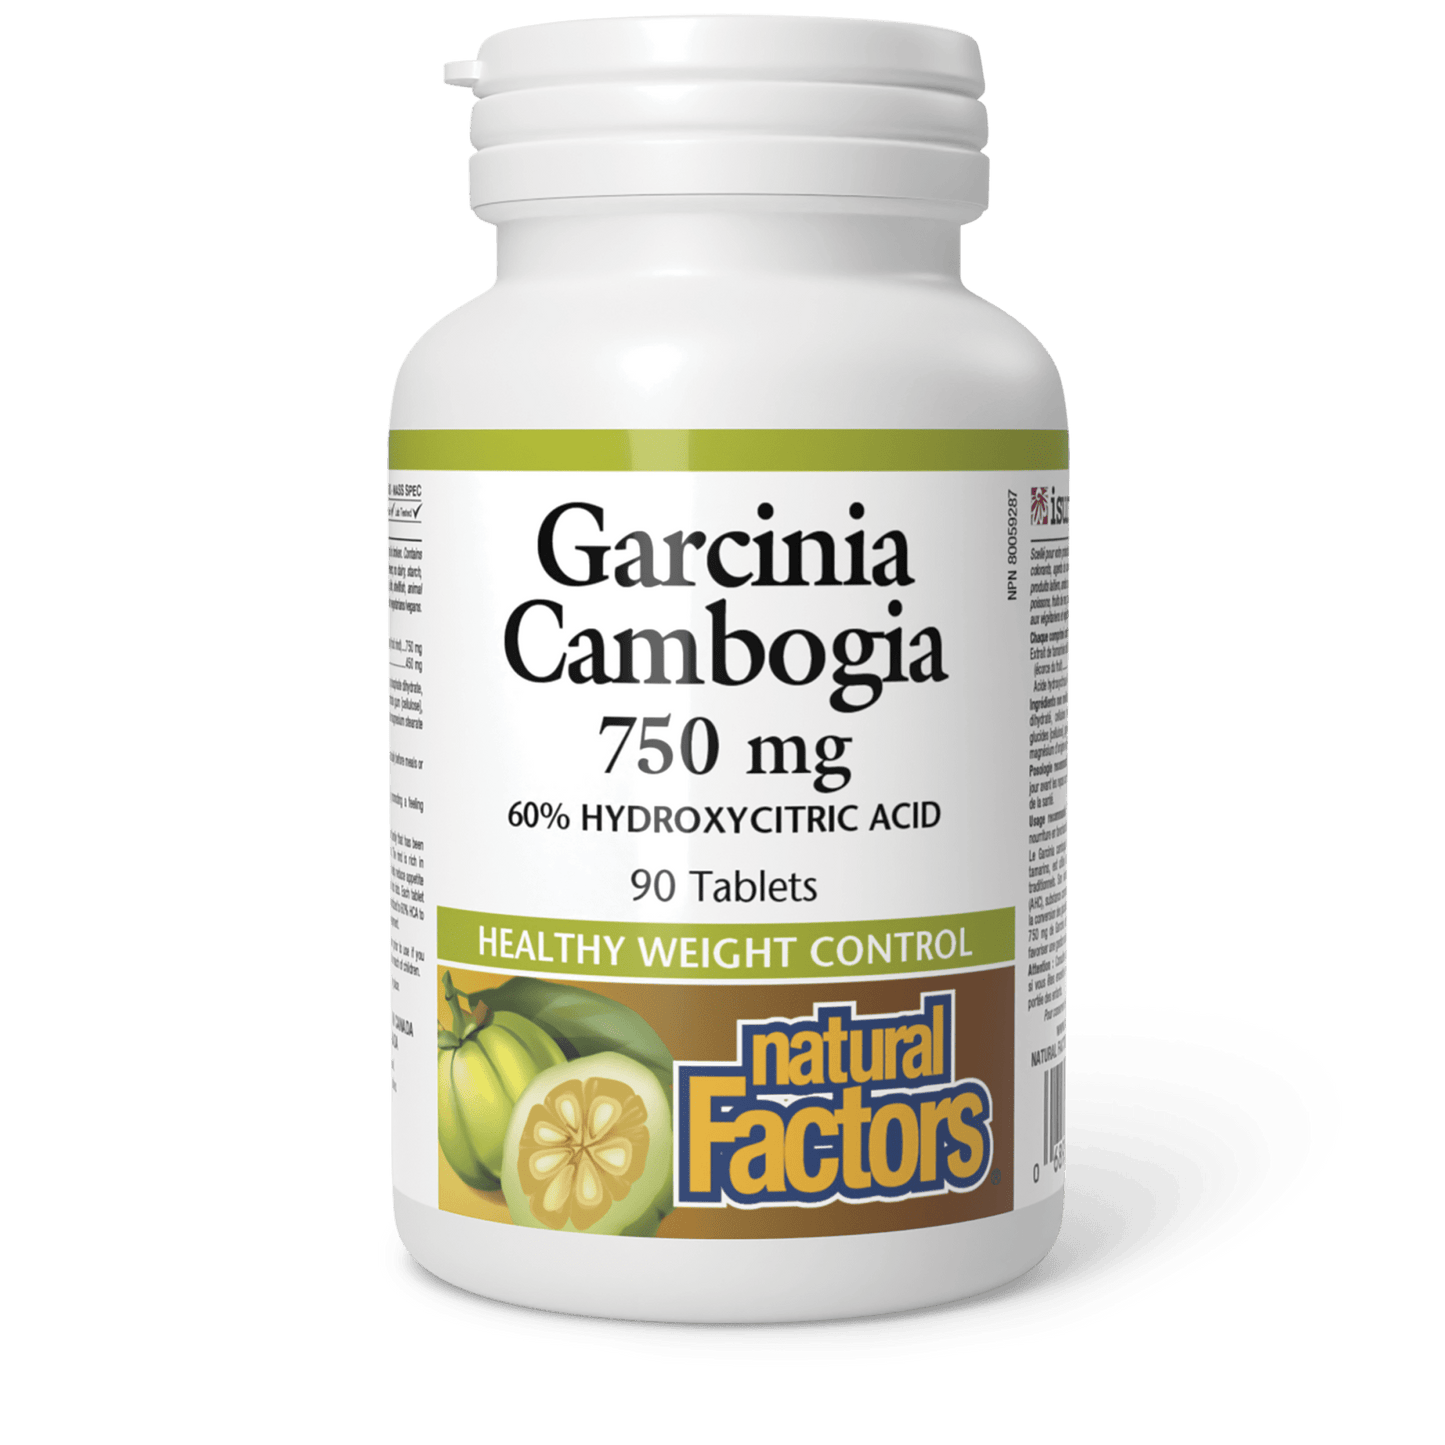 Garcinia Cambogia 750 mg, Natural Factors|v|image|4116